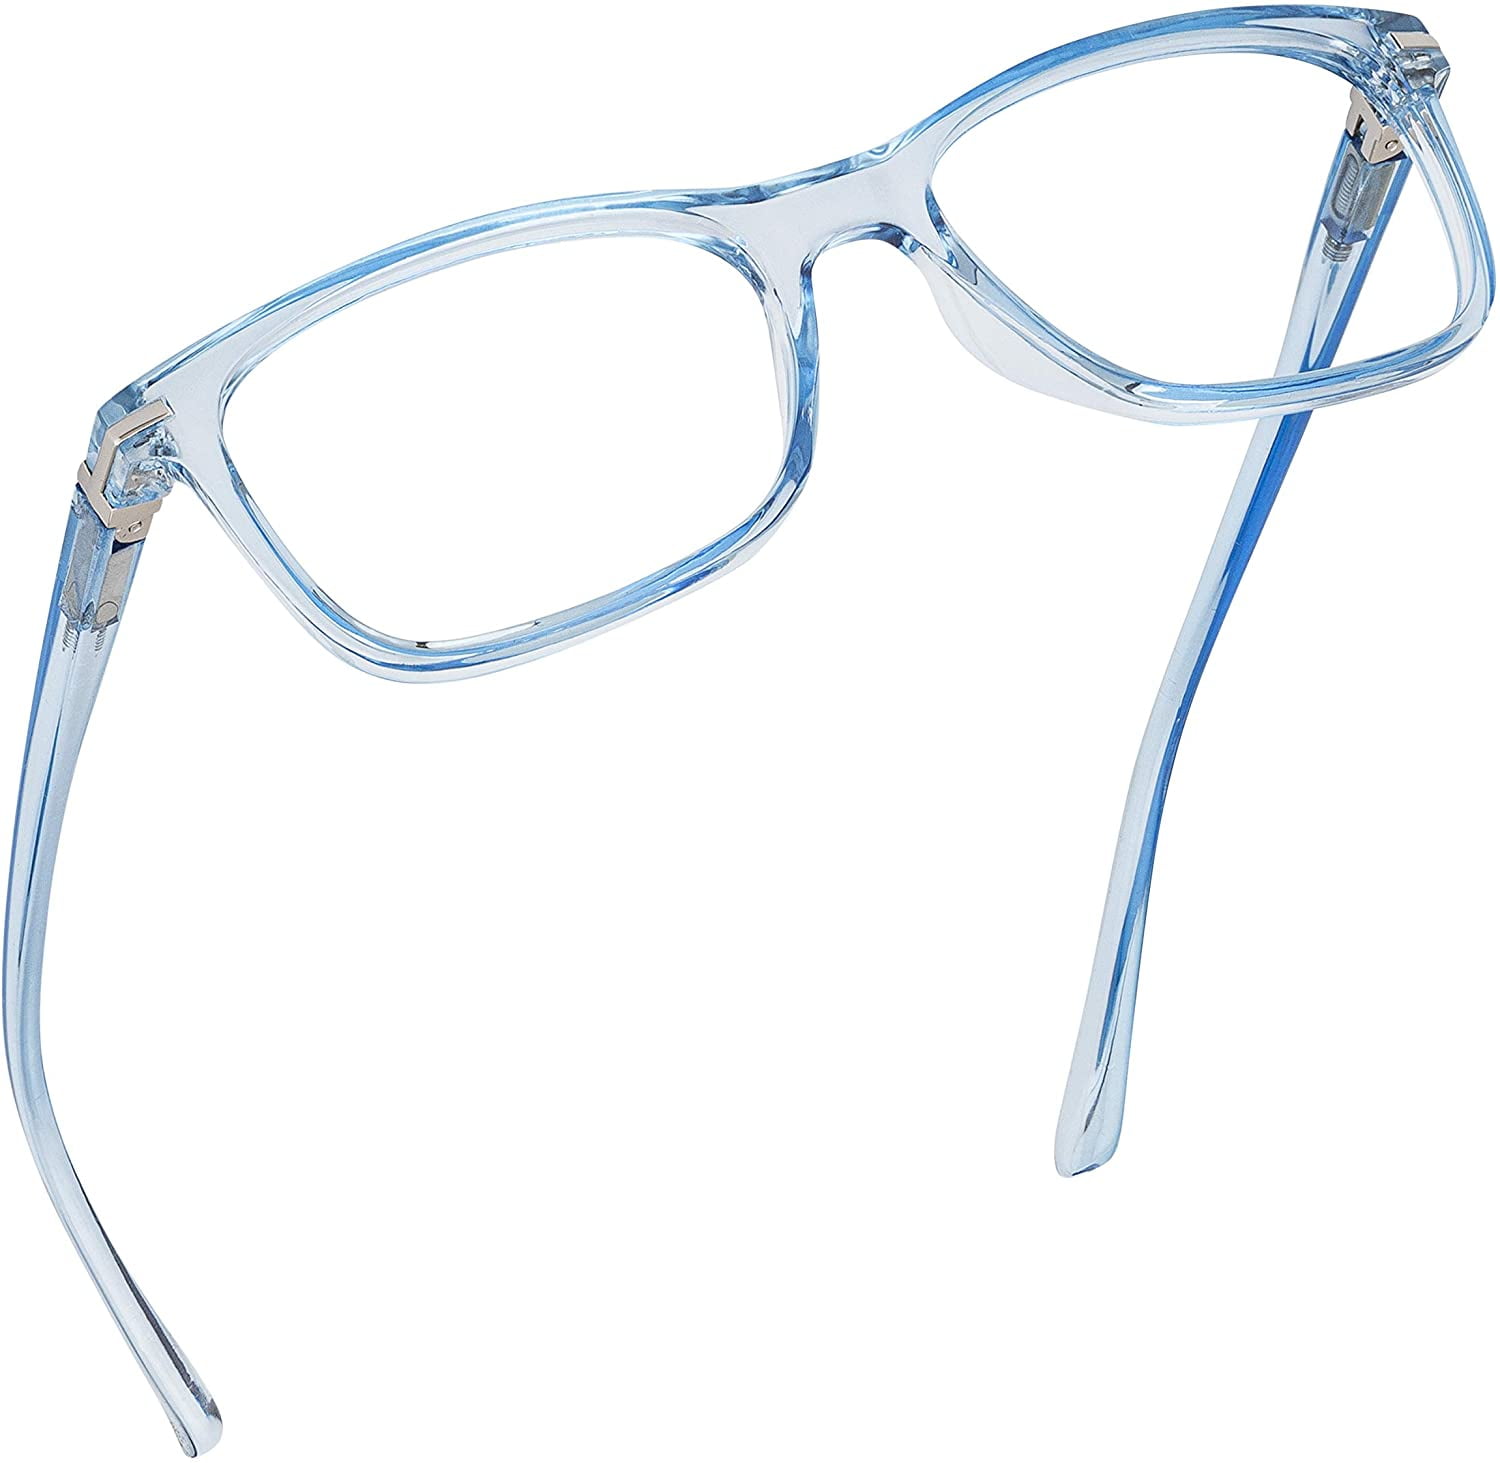 Readerest Clear Blue Light Blocking Reading Glasses (3.00 Magnification), 3  - Kroger